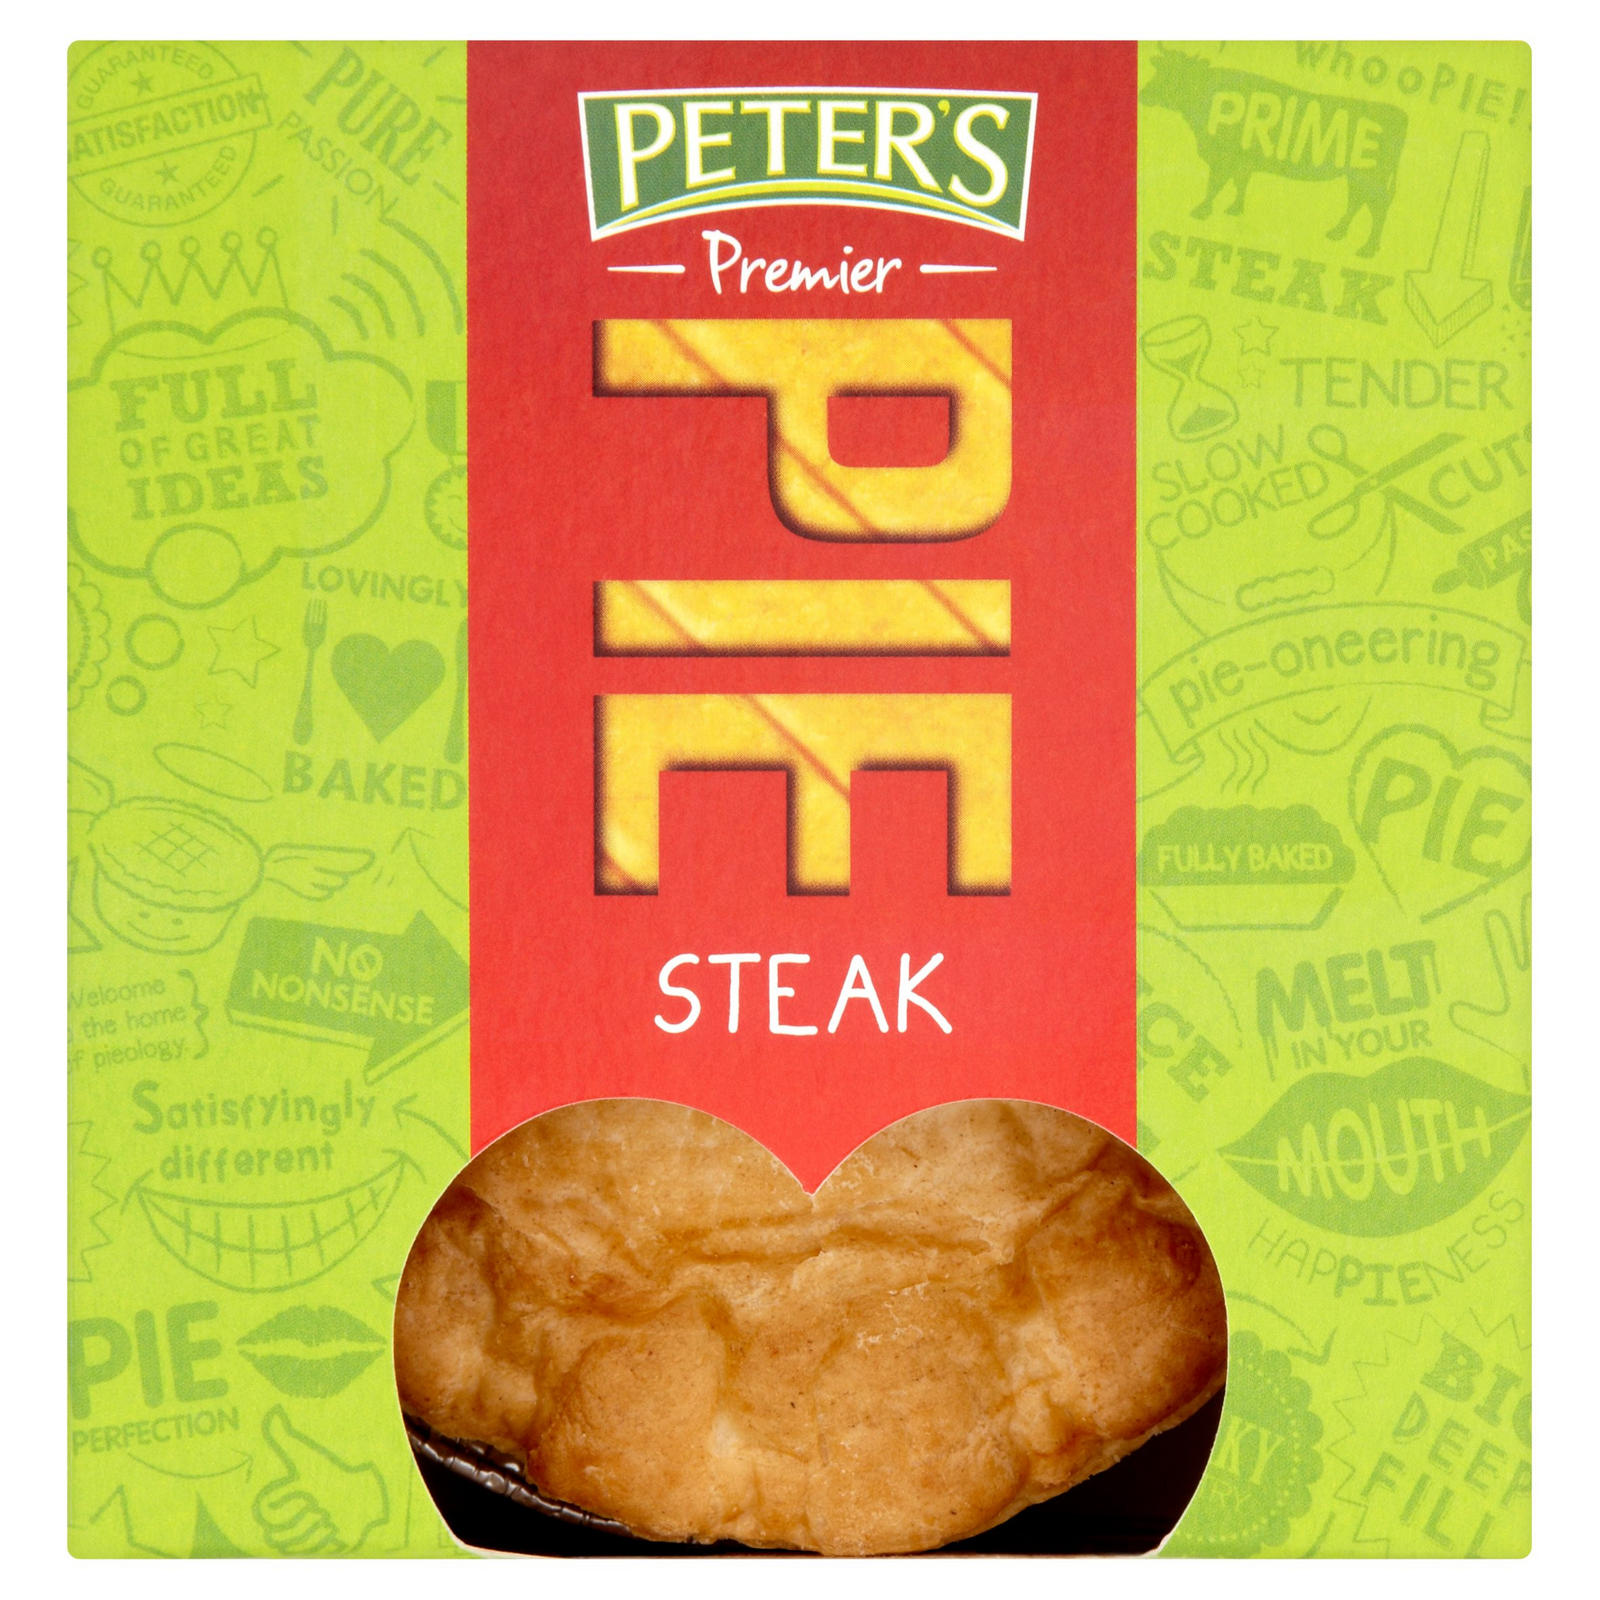 Peter's Premier Steak Pie 225g | Pies & Quiches | Iceland ...